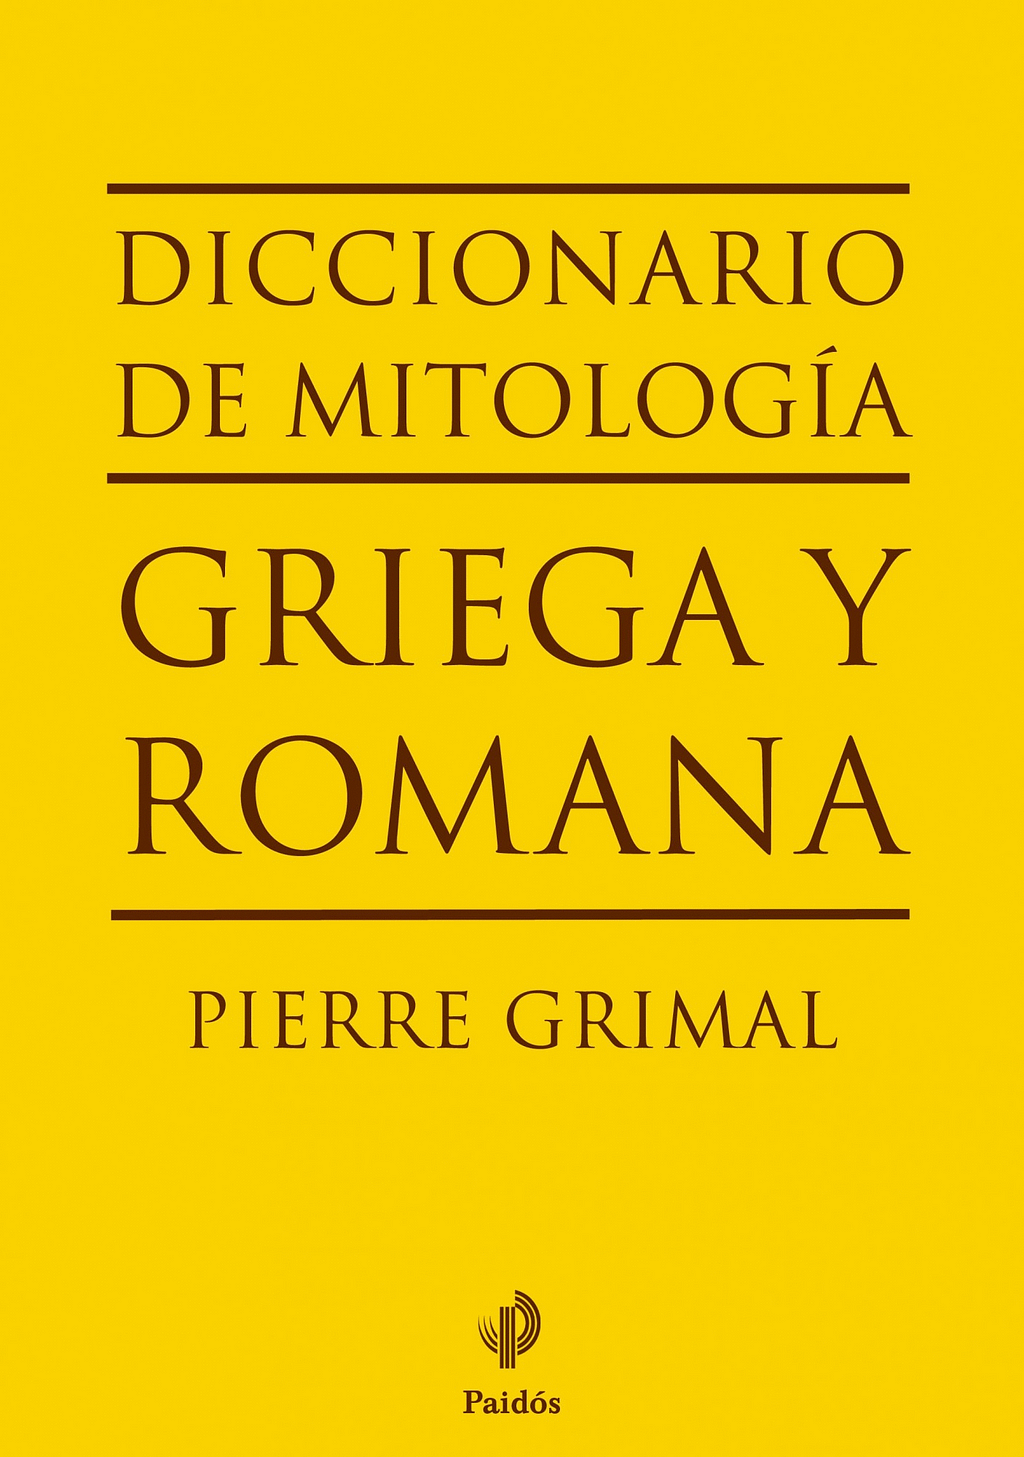 Diccionario de Mitología Griega y Romana de Pierre Grimal